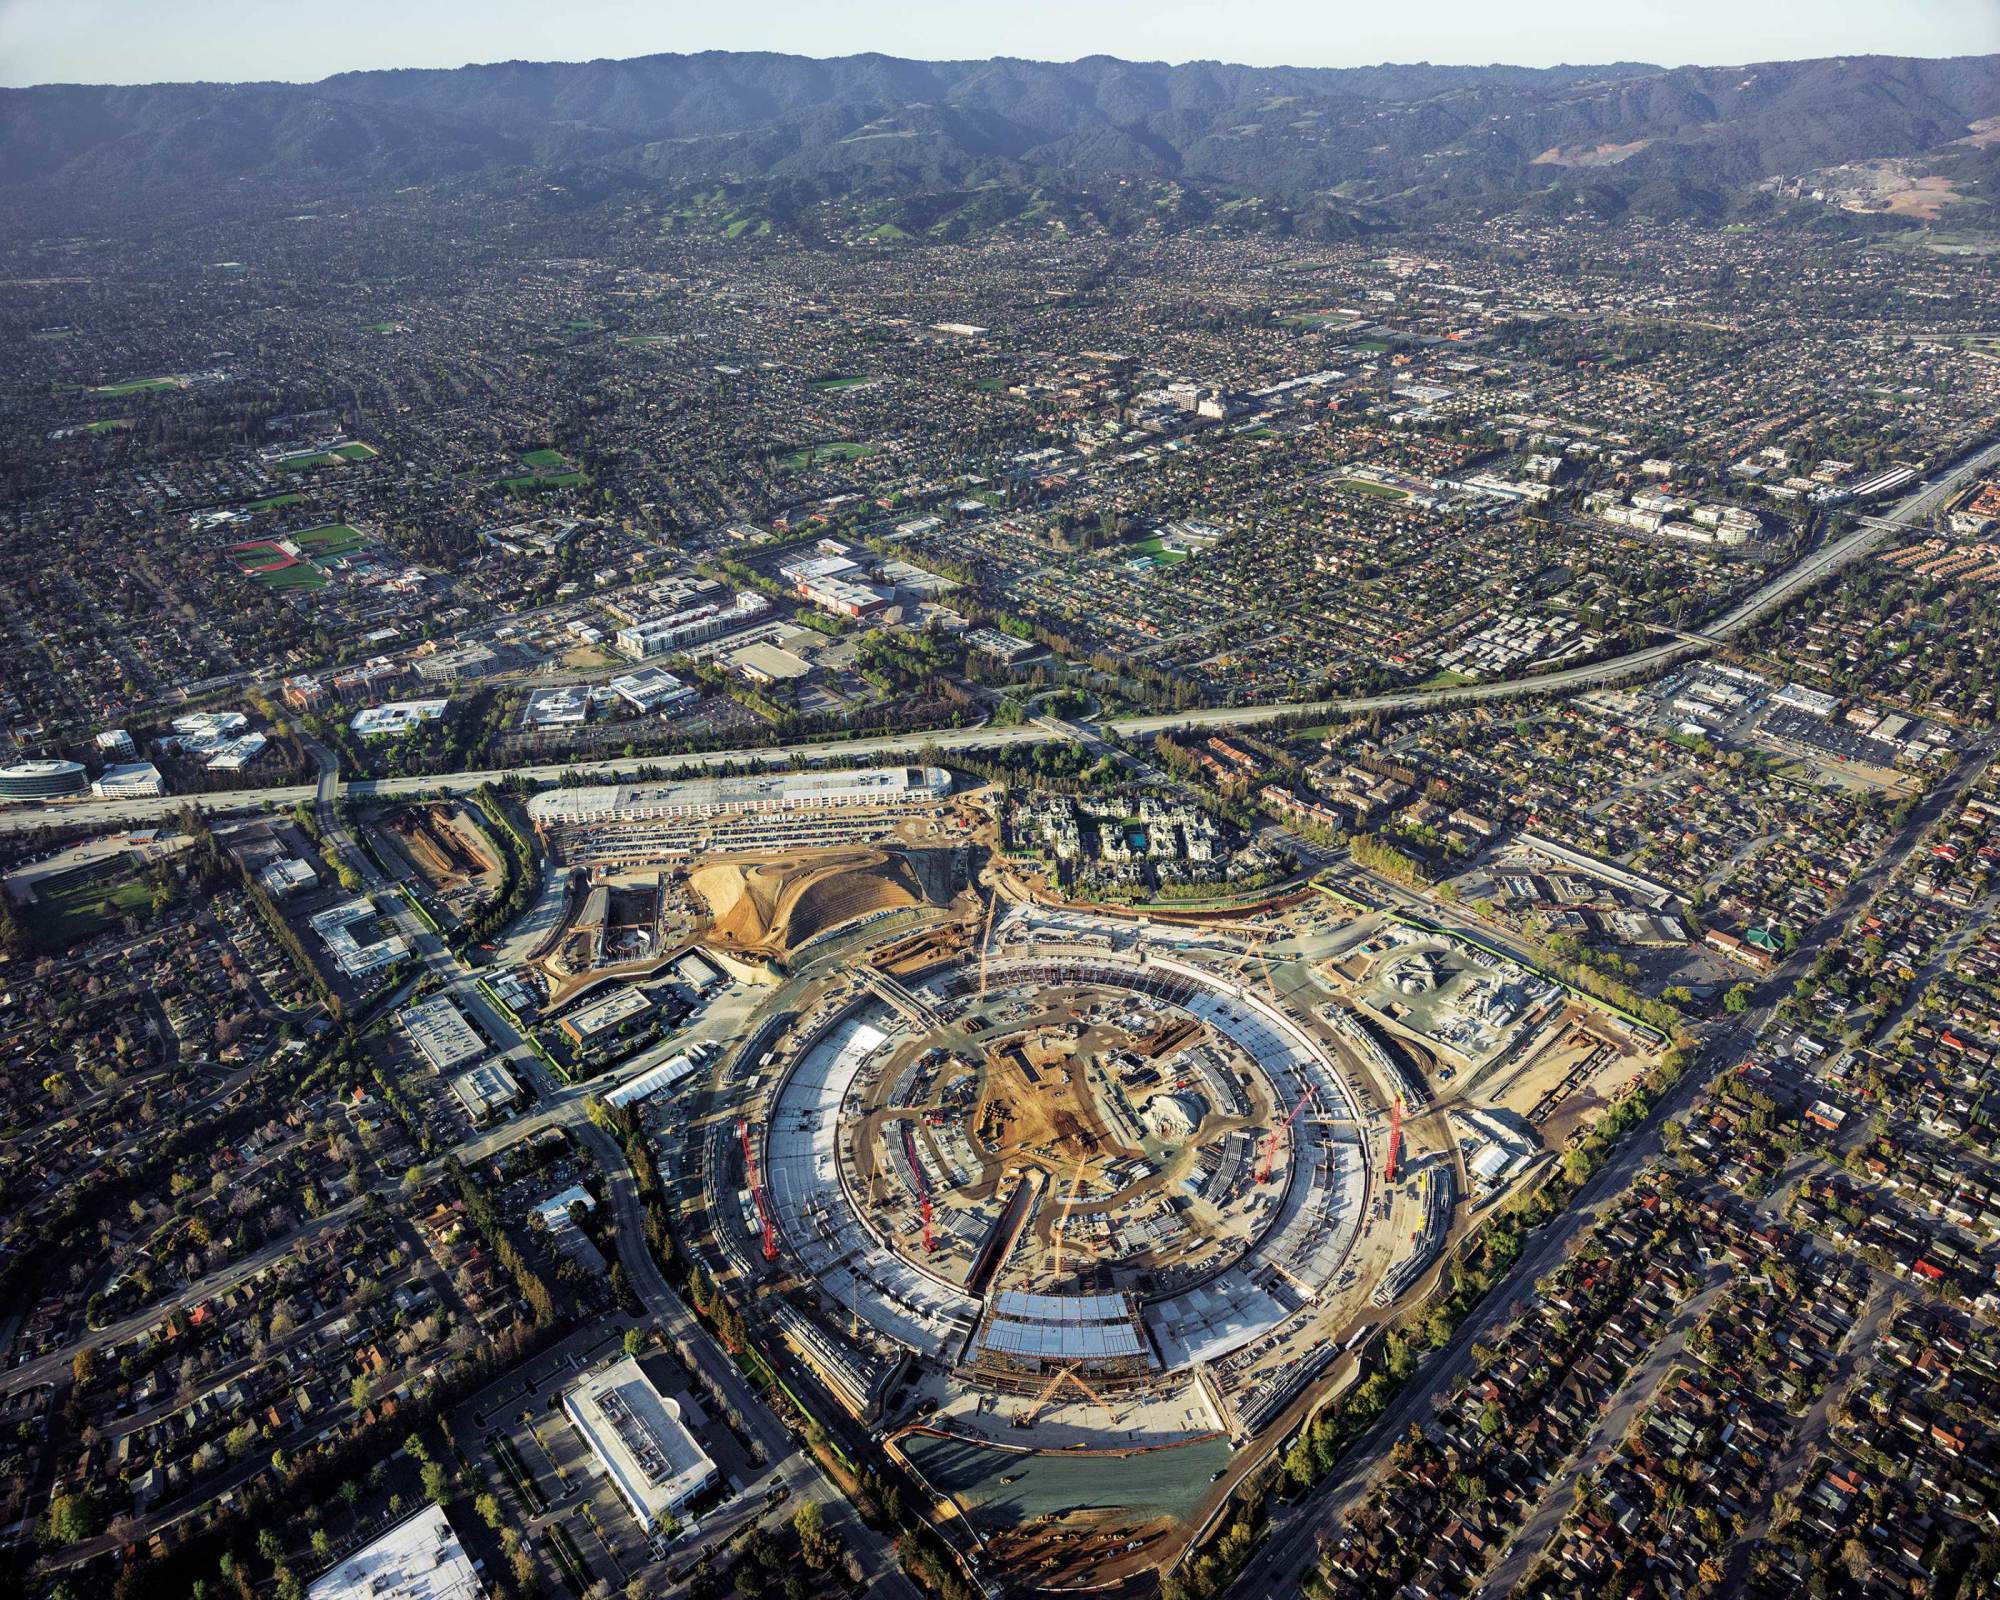 Appleの新本社キャンパス｢Apple Campus 2｣をより高高度から撮影した空撮写真